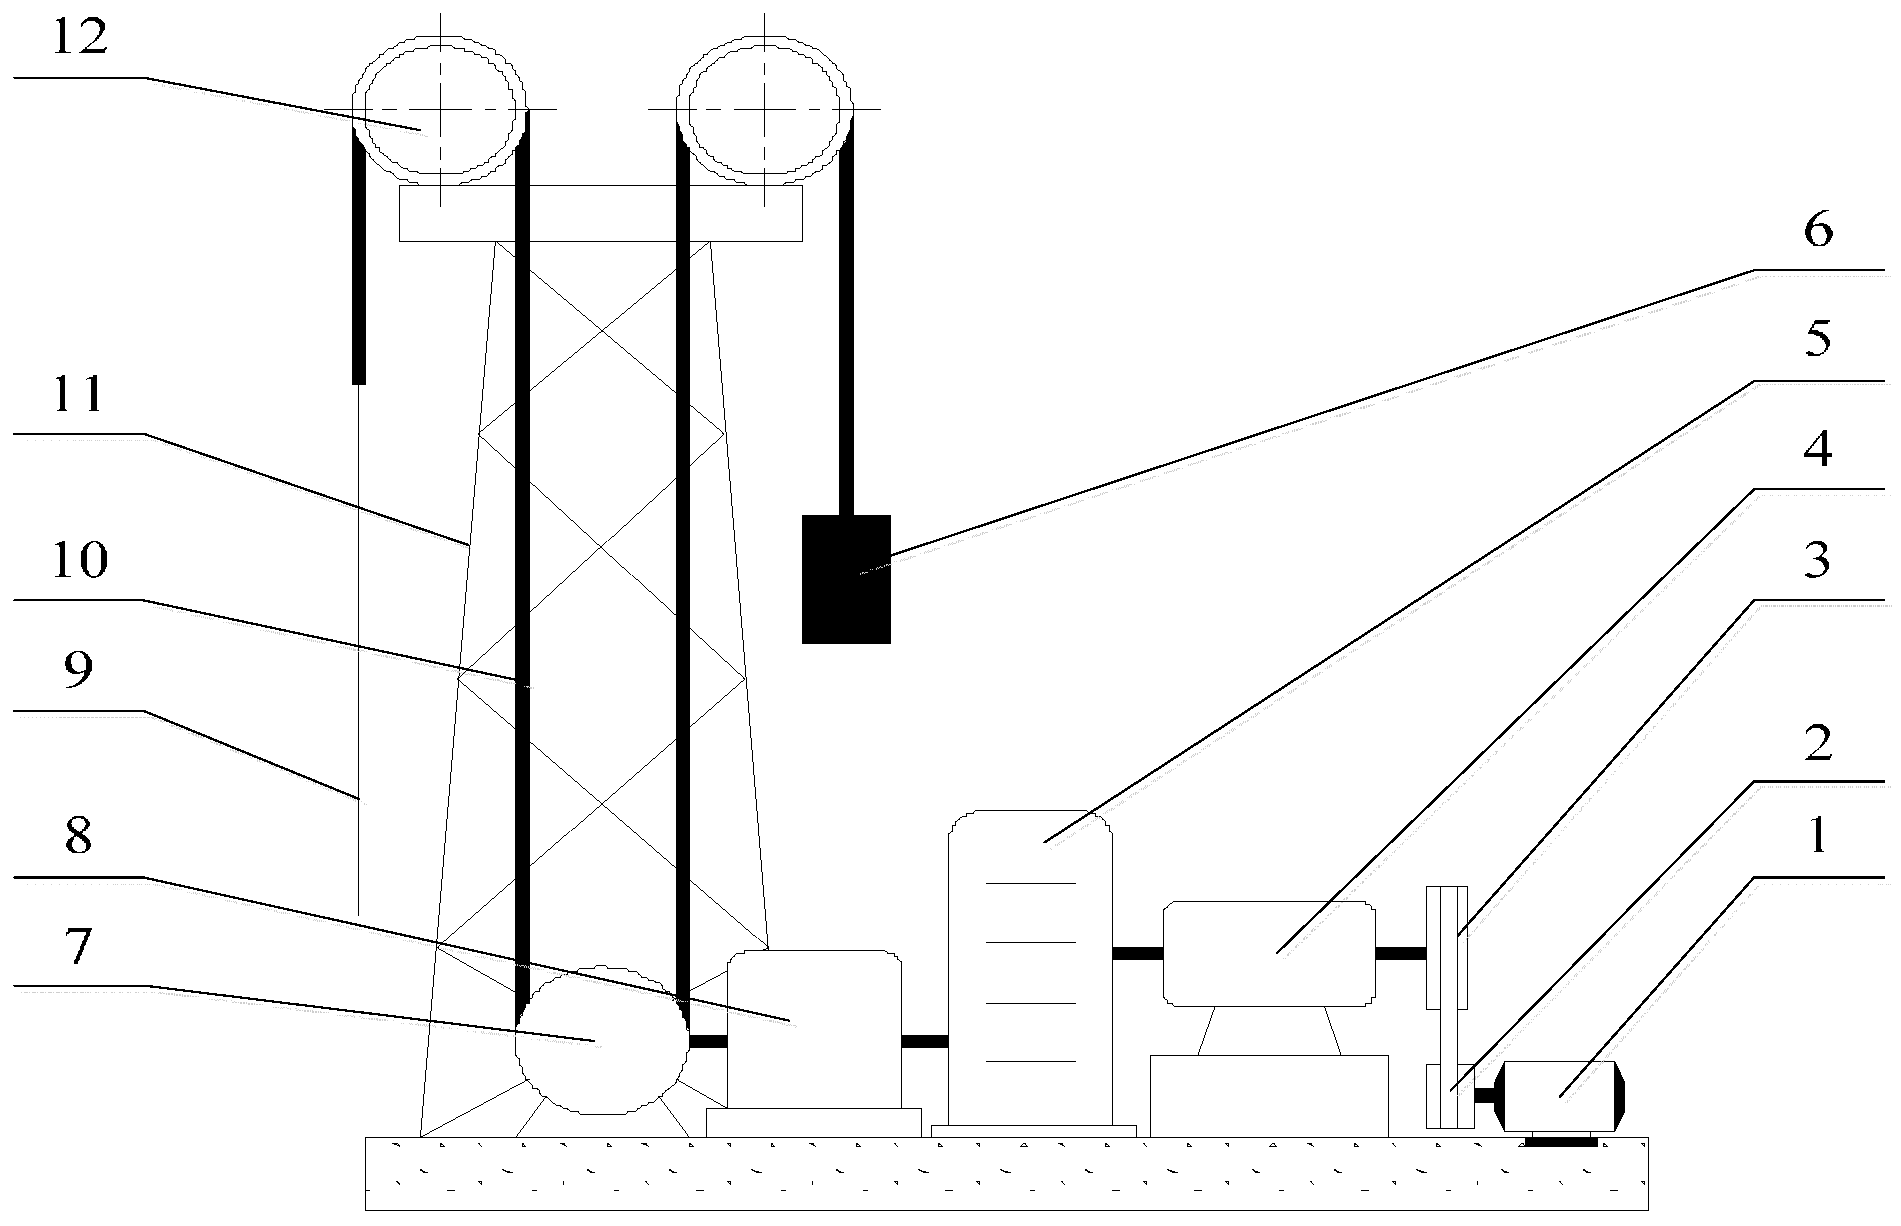 olympian 4001e wiring diagram